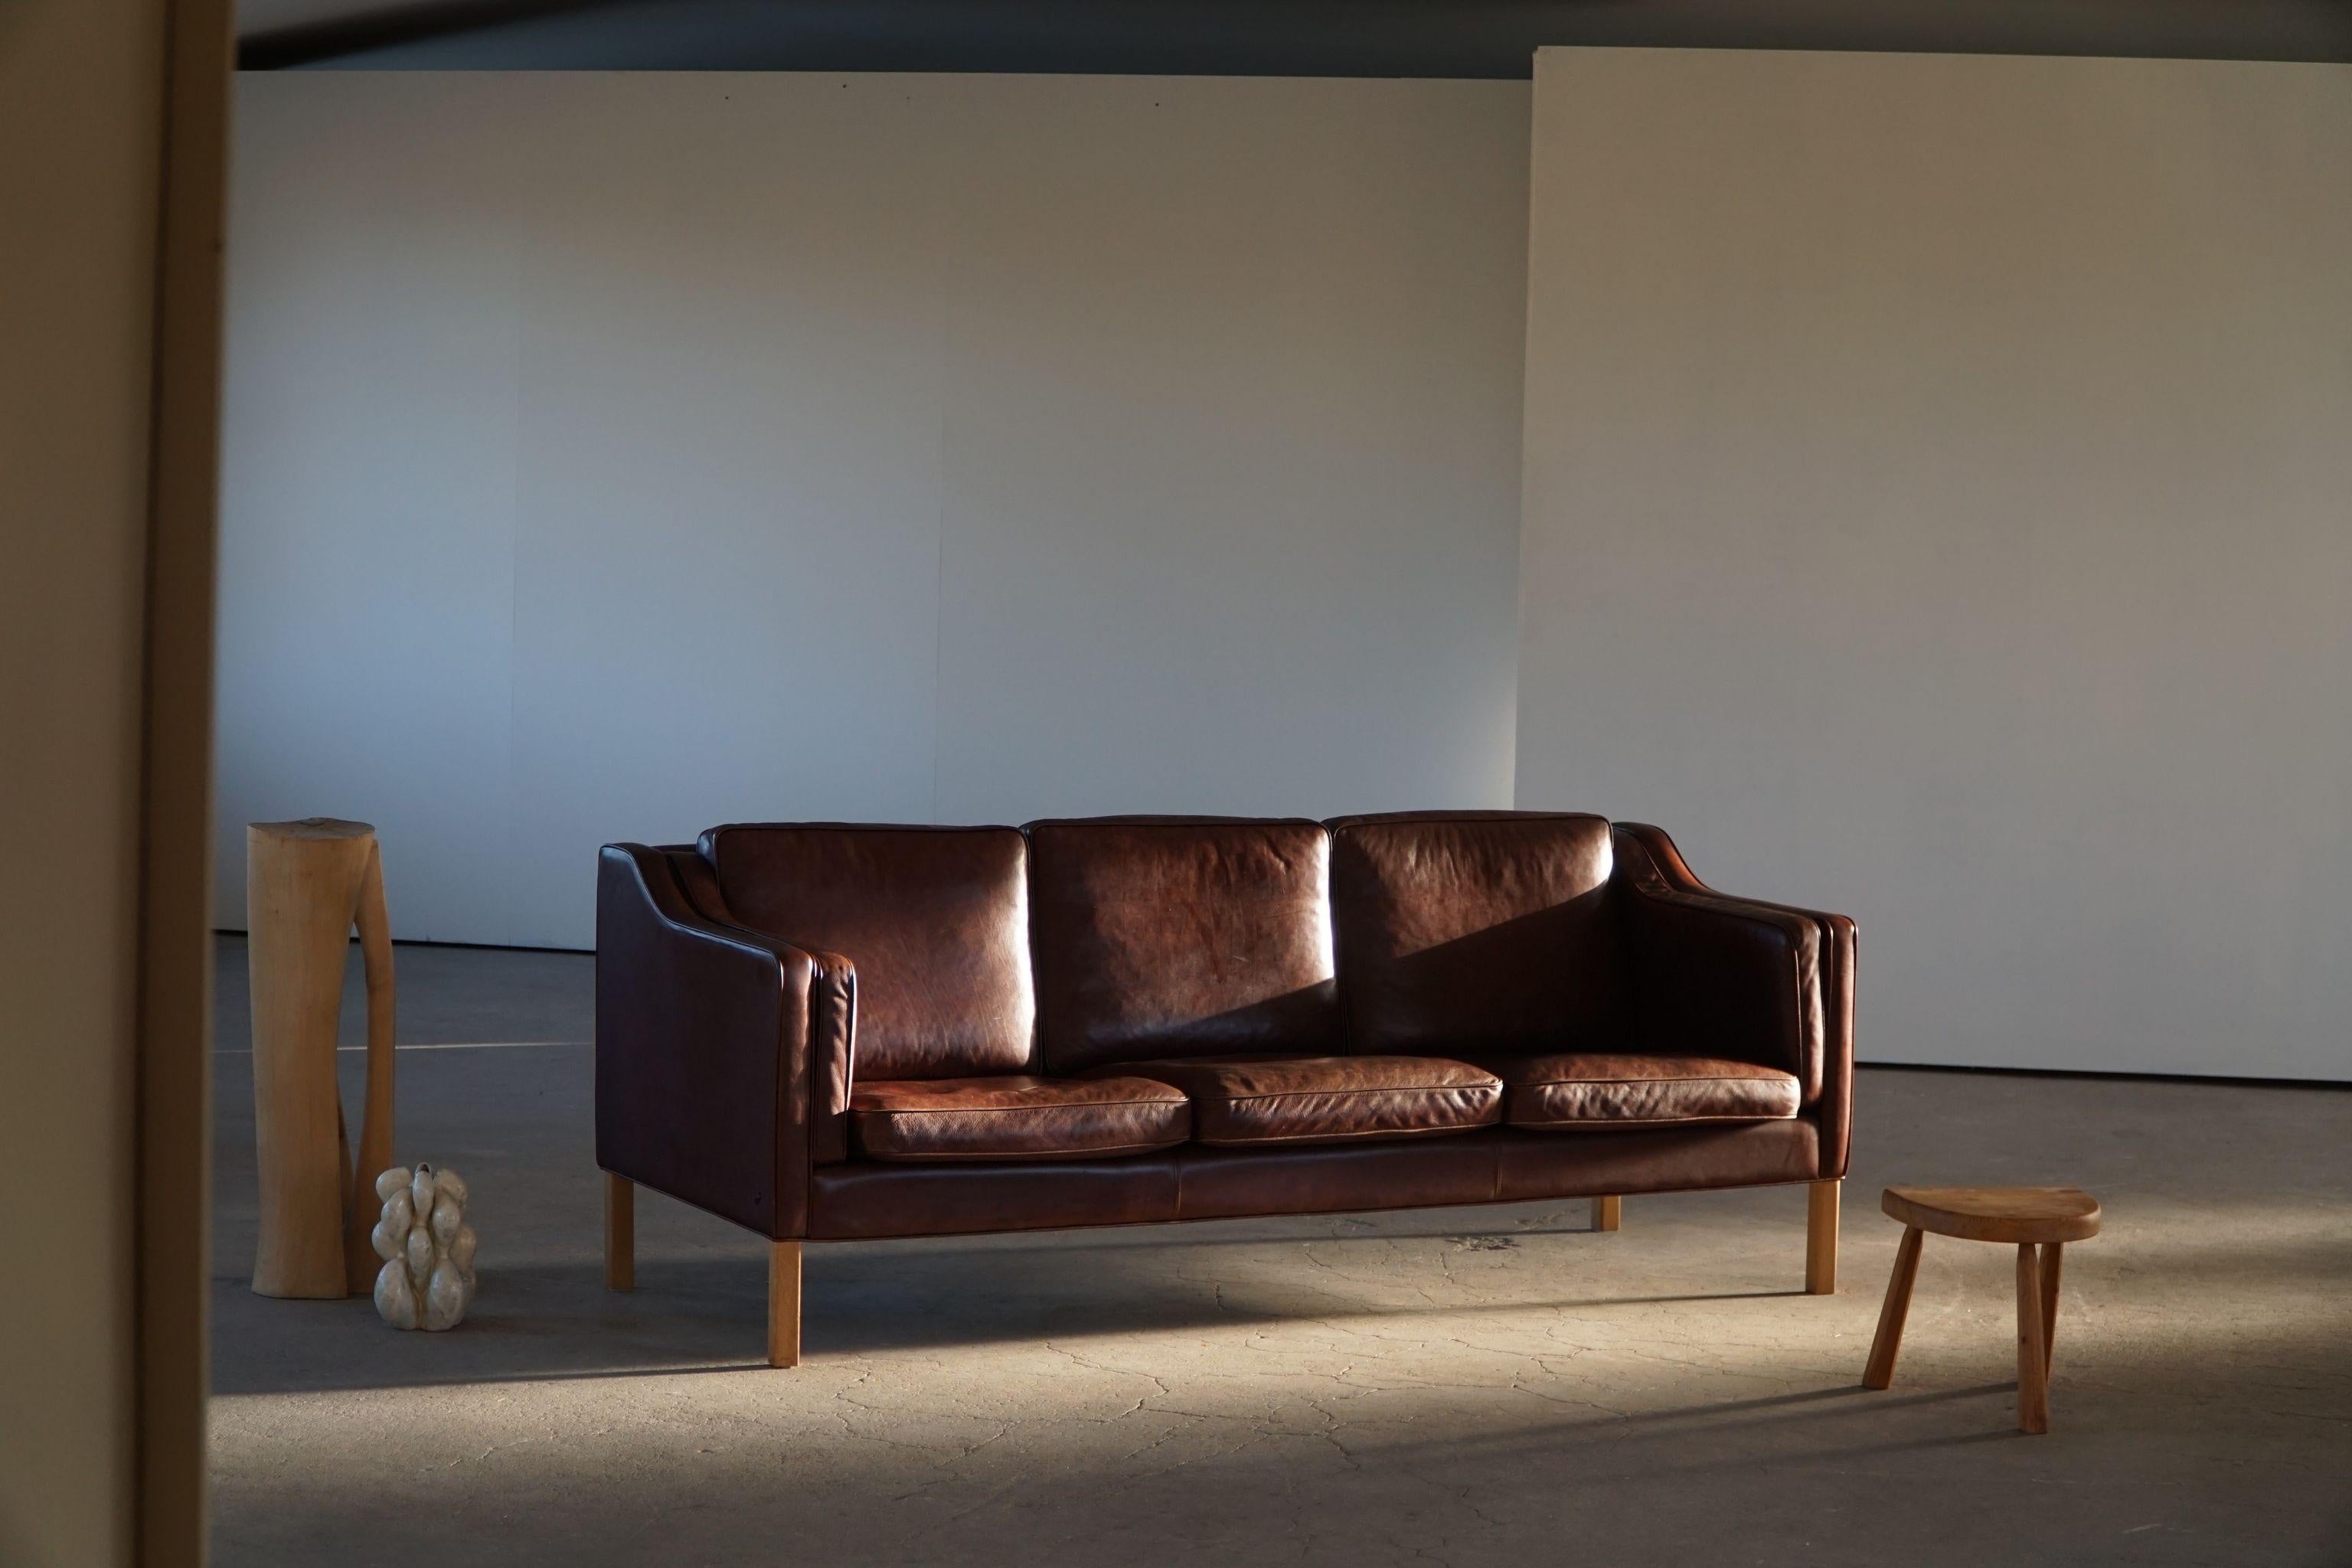 Un canapé classique danois Mordern 3 places en cuir brun, pieds en hêtre massif. Des lignes simples et un grand confort caractérisent ce canapé. Conçu par Hurup Møbelfabrik, Danemark. Fabriqué dans les années 1970.

Ce magnifique canapé